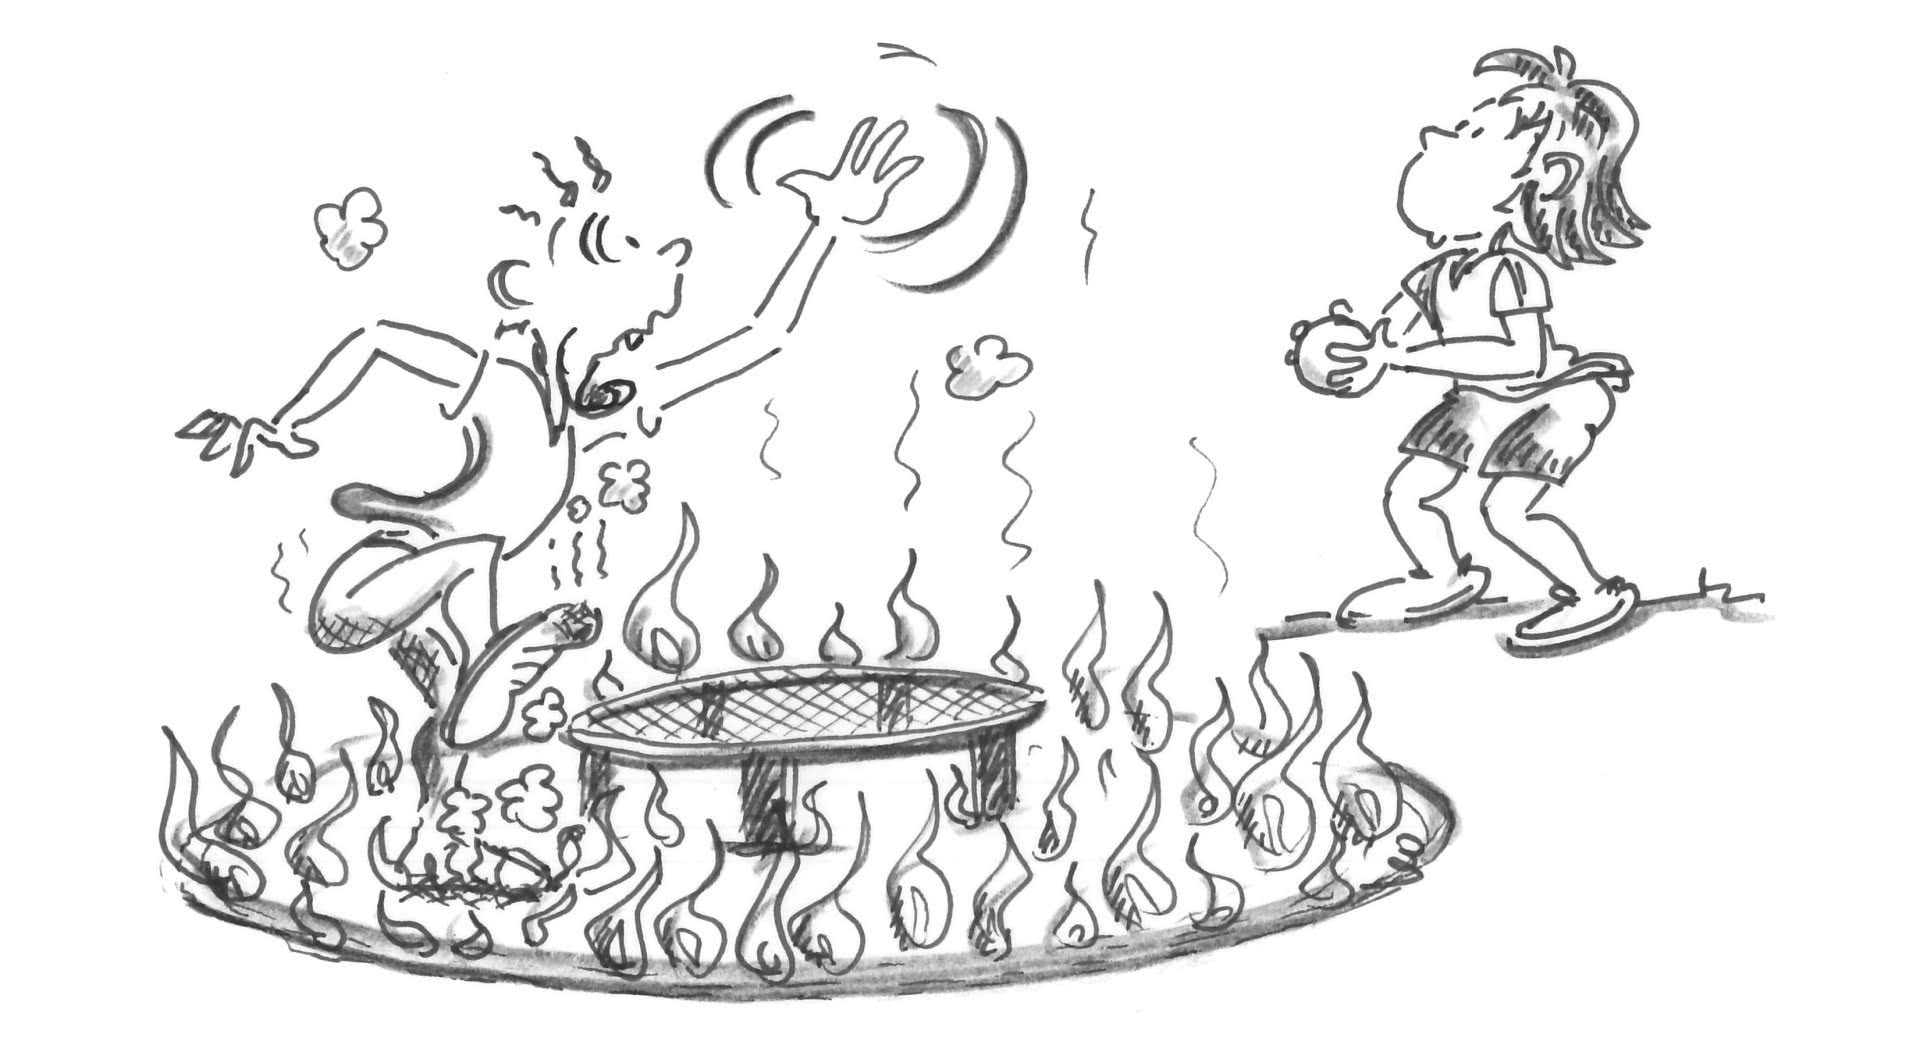 Dessin: un joueur se trouve dans un cercle en flammes au centre duquel se trouve le filet.